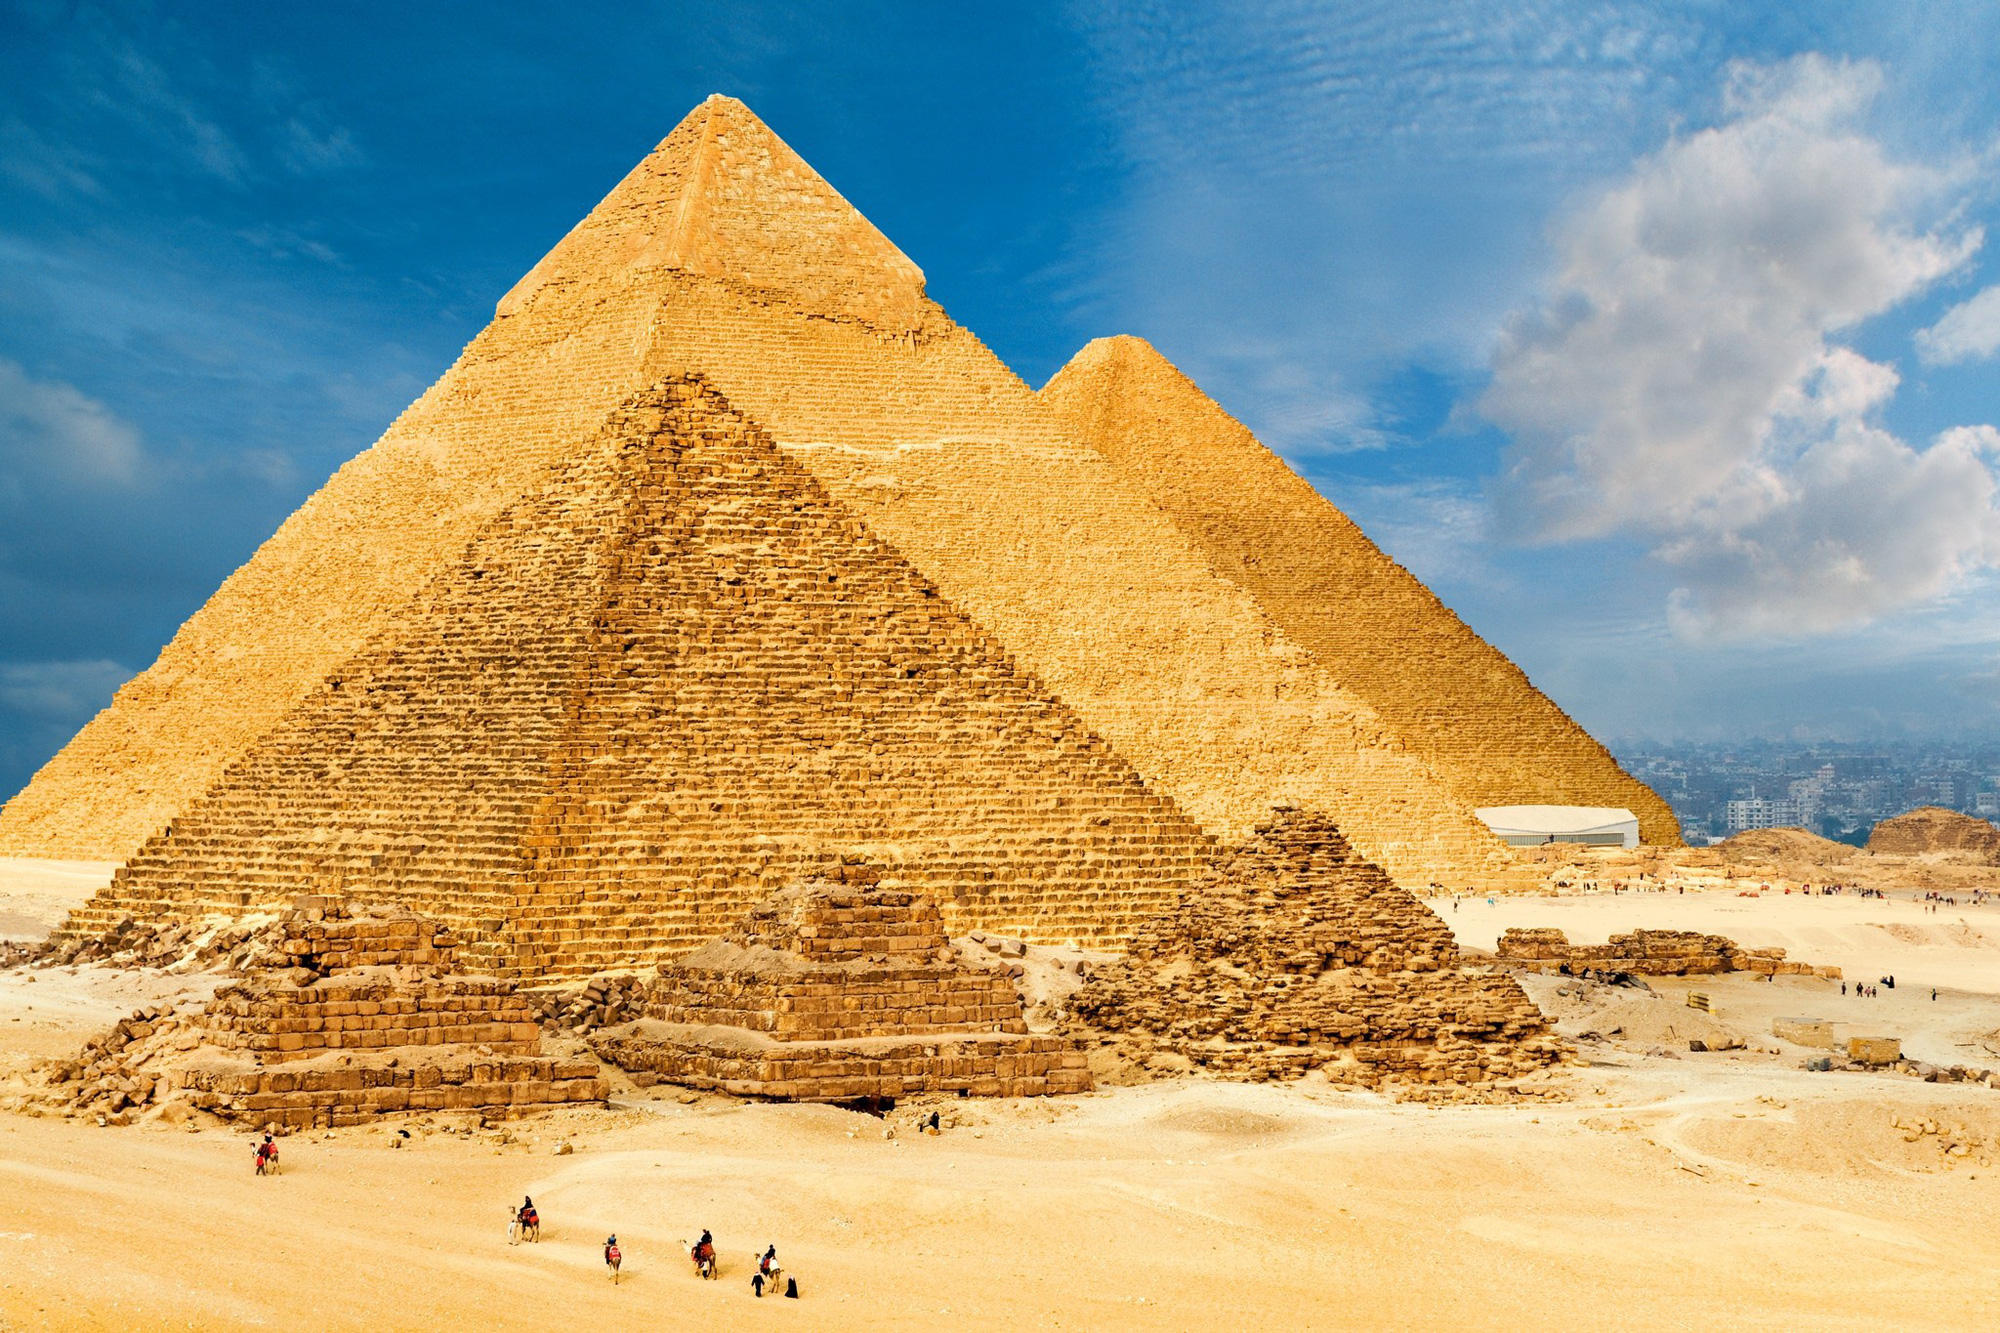 Tham quan công trình kiến trúc kim tự tháp độc đáo để trải nghiệm lịch sử với kiến trúc xưa cũ và đầy bí ẩn. Đây là một điểm du lịch không thể bỏ qua cho những ai yêu thích sản phẩm kiến trúc độc đáo và tâm huyết. Hãy ghé thăm và khám phá công trình kim tự tháp này để có những trải nghiệm độc đáo và tuyệt vời.